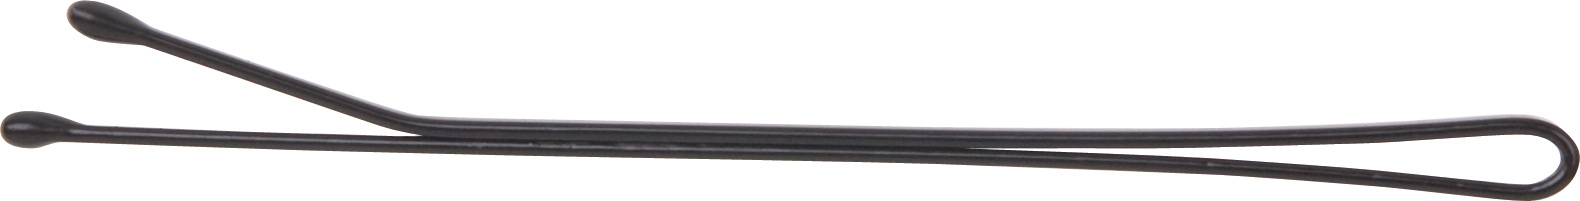 CL3021B Невидимки DEWAL черные, прямые 70 мм, 40 шт/уп, на блистере